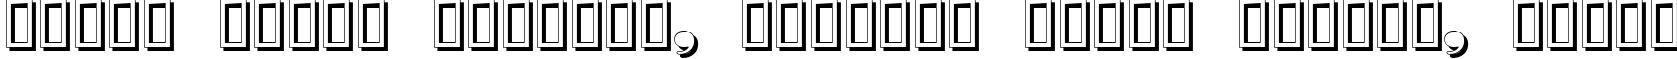 Пример написания шрифтом Nubian Shadow текста на белорусском